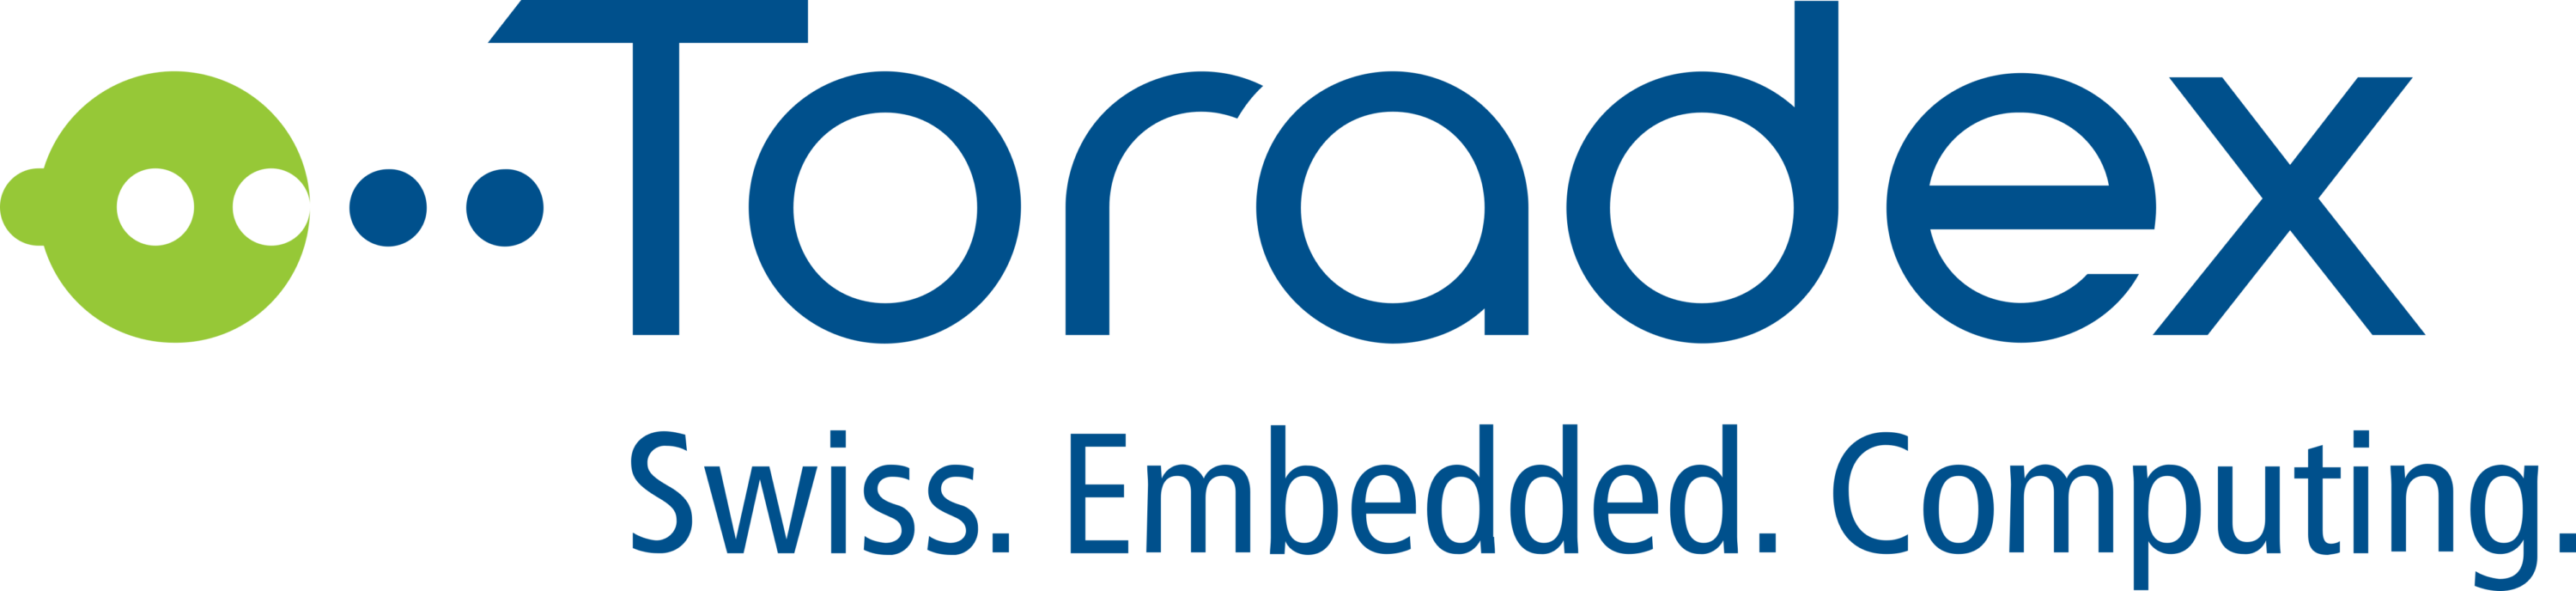 Toradex Linux Platform Logo